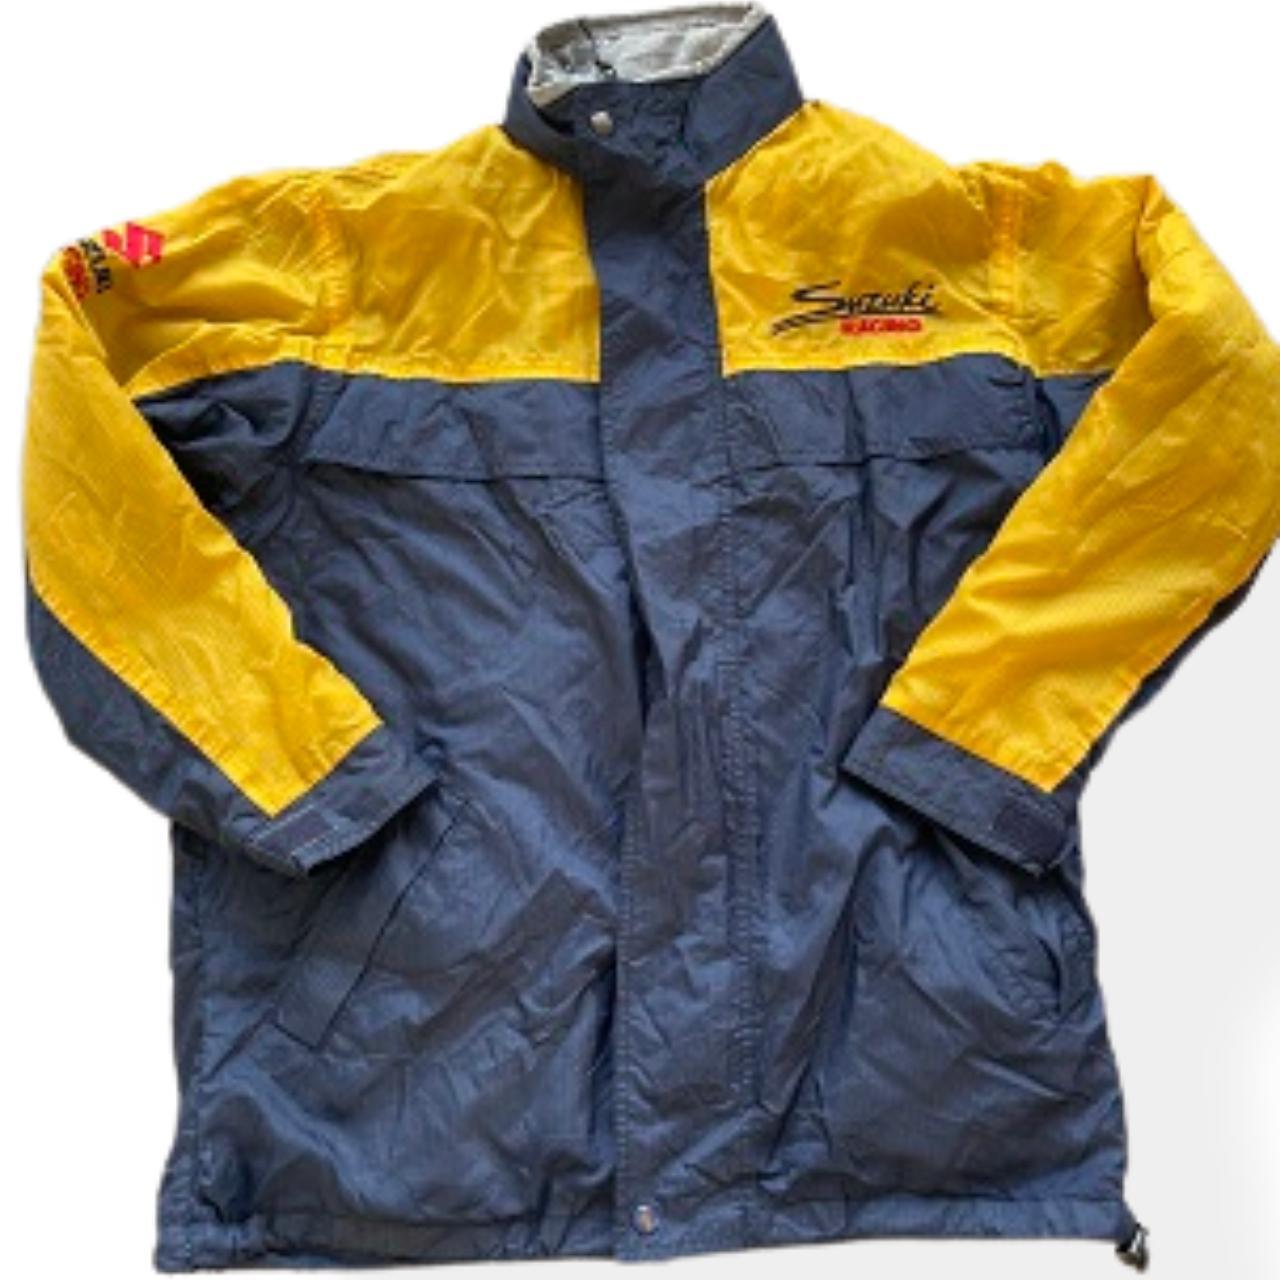 Vintage Suzuki Racing Waterproof Zip Up Windbreaker Medium hoodie Jacket in Blue and Yellow